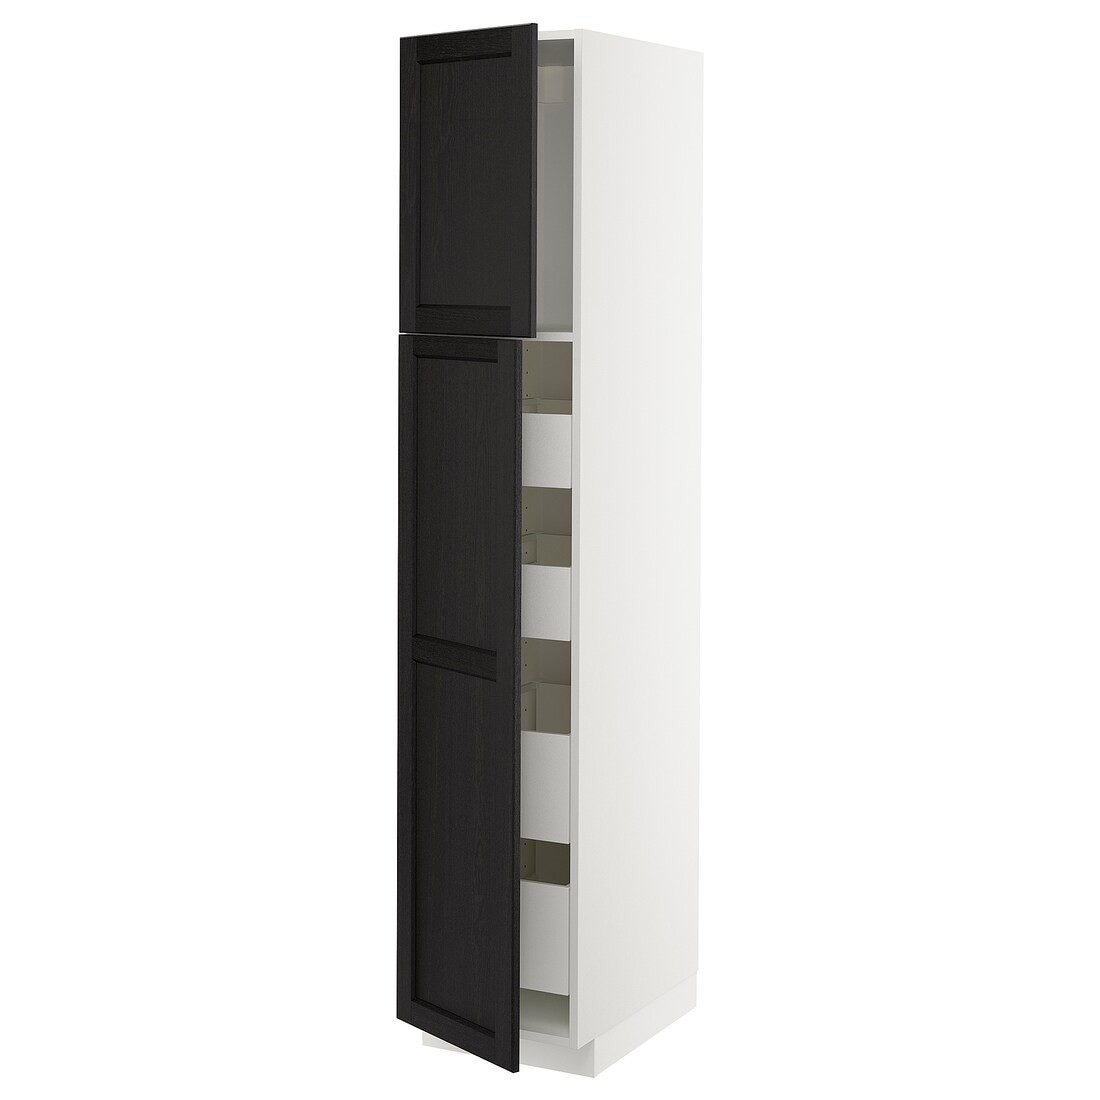 IKEA METOD МЕТОД / MAXIMERA МАКСИМЕРА Шкаф высокий 2 двери / 4 ящика, белый / Lerhyttan черная морилка, 40x60x200 см 89461187 | 894.611.87